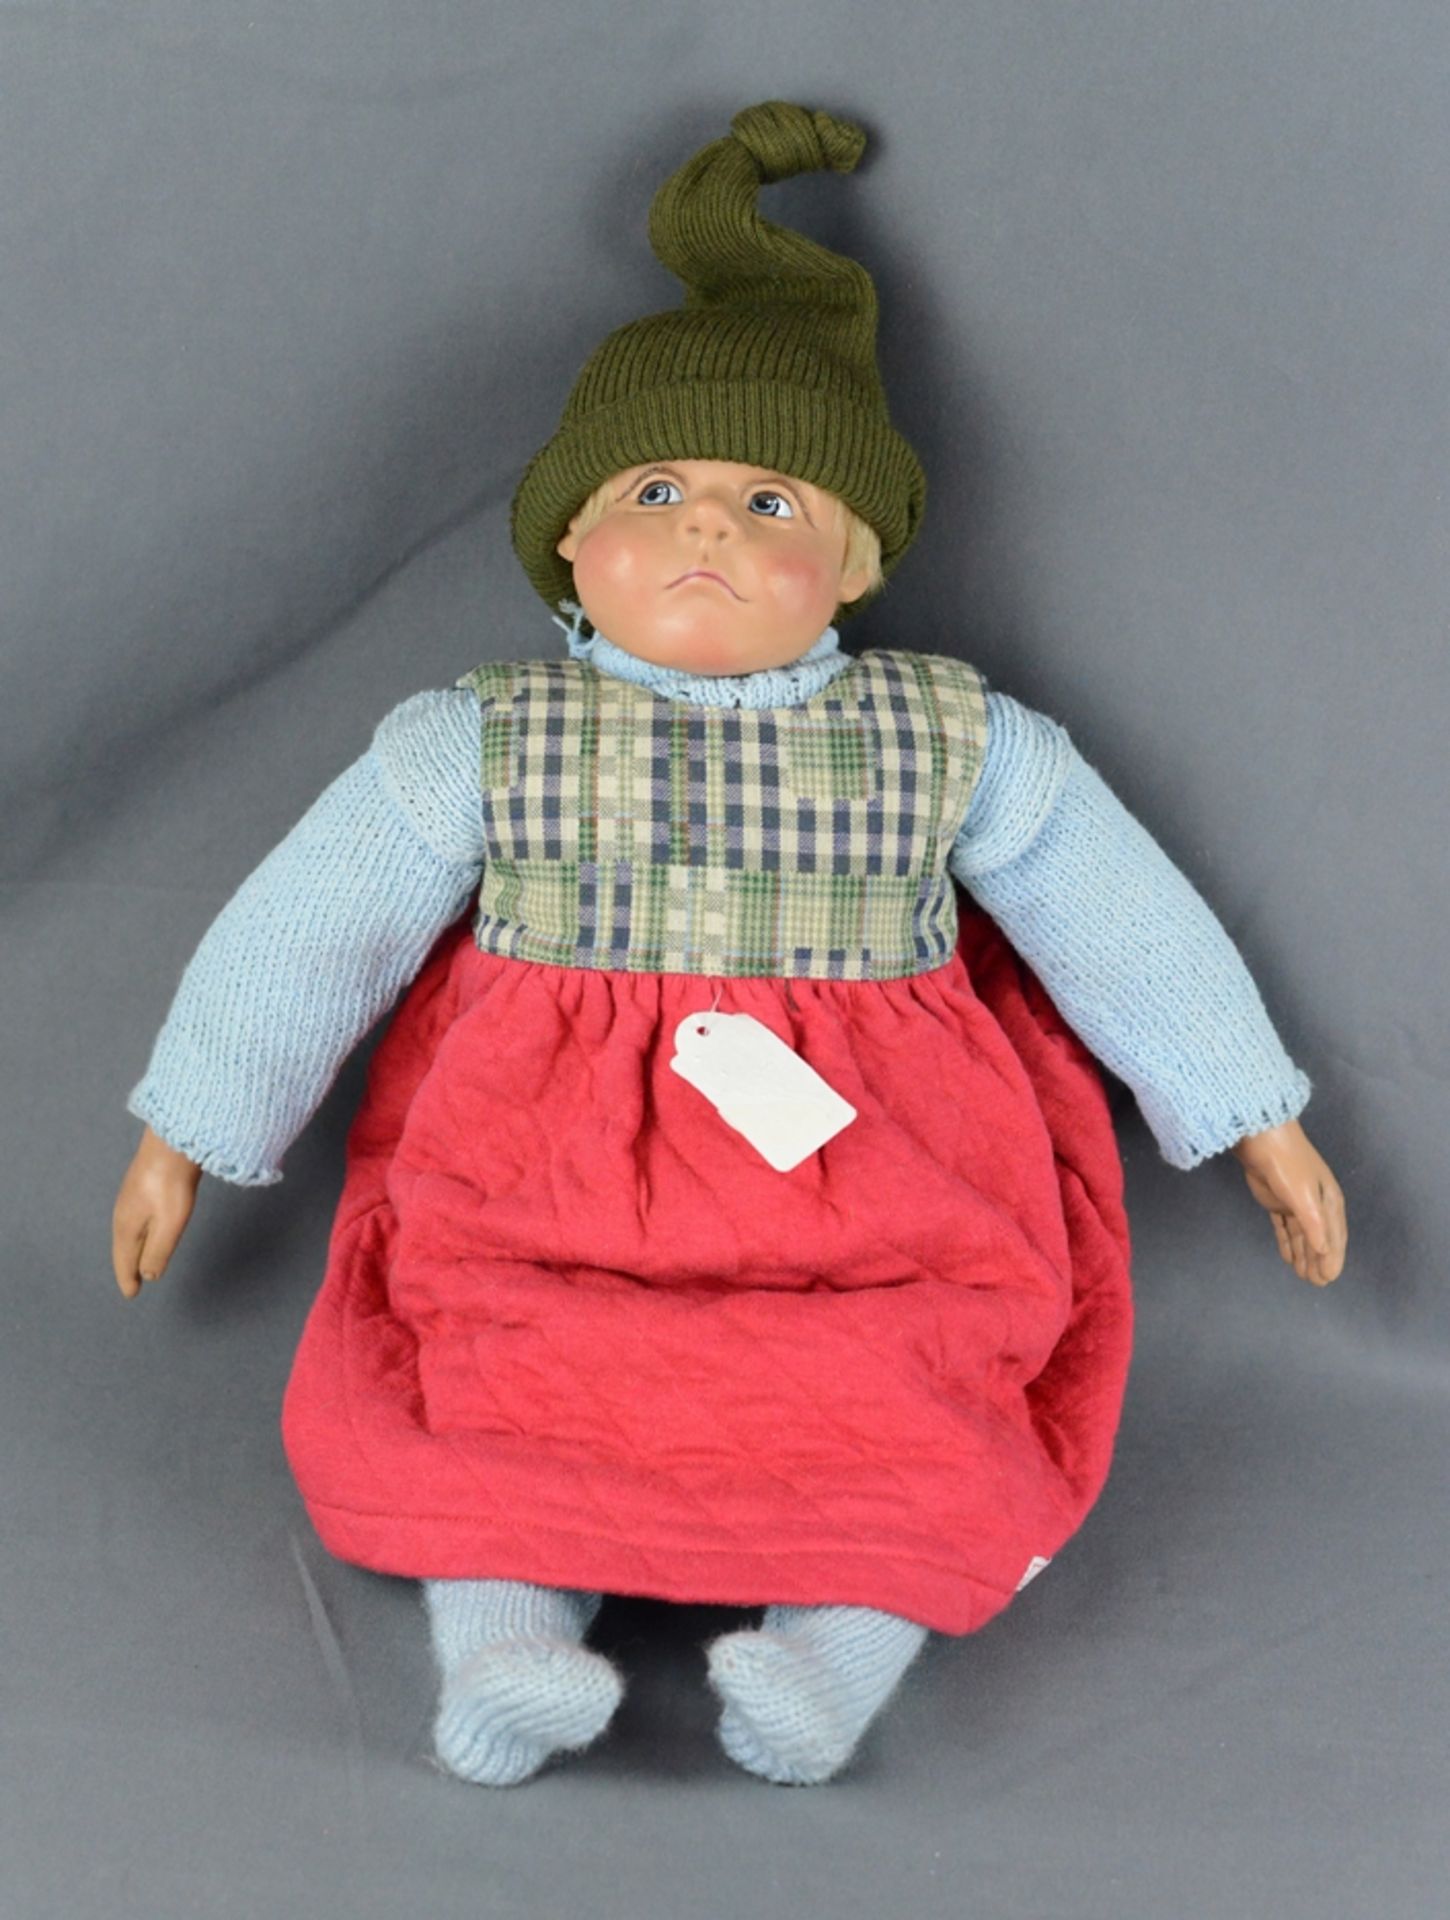 Artist doll, Kristin Schramm, 1992, Sigikid, 24680, 34/999, short human hair, cap and red dress, he